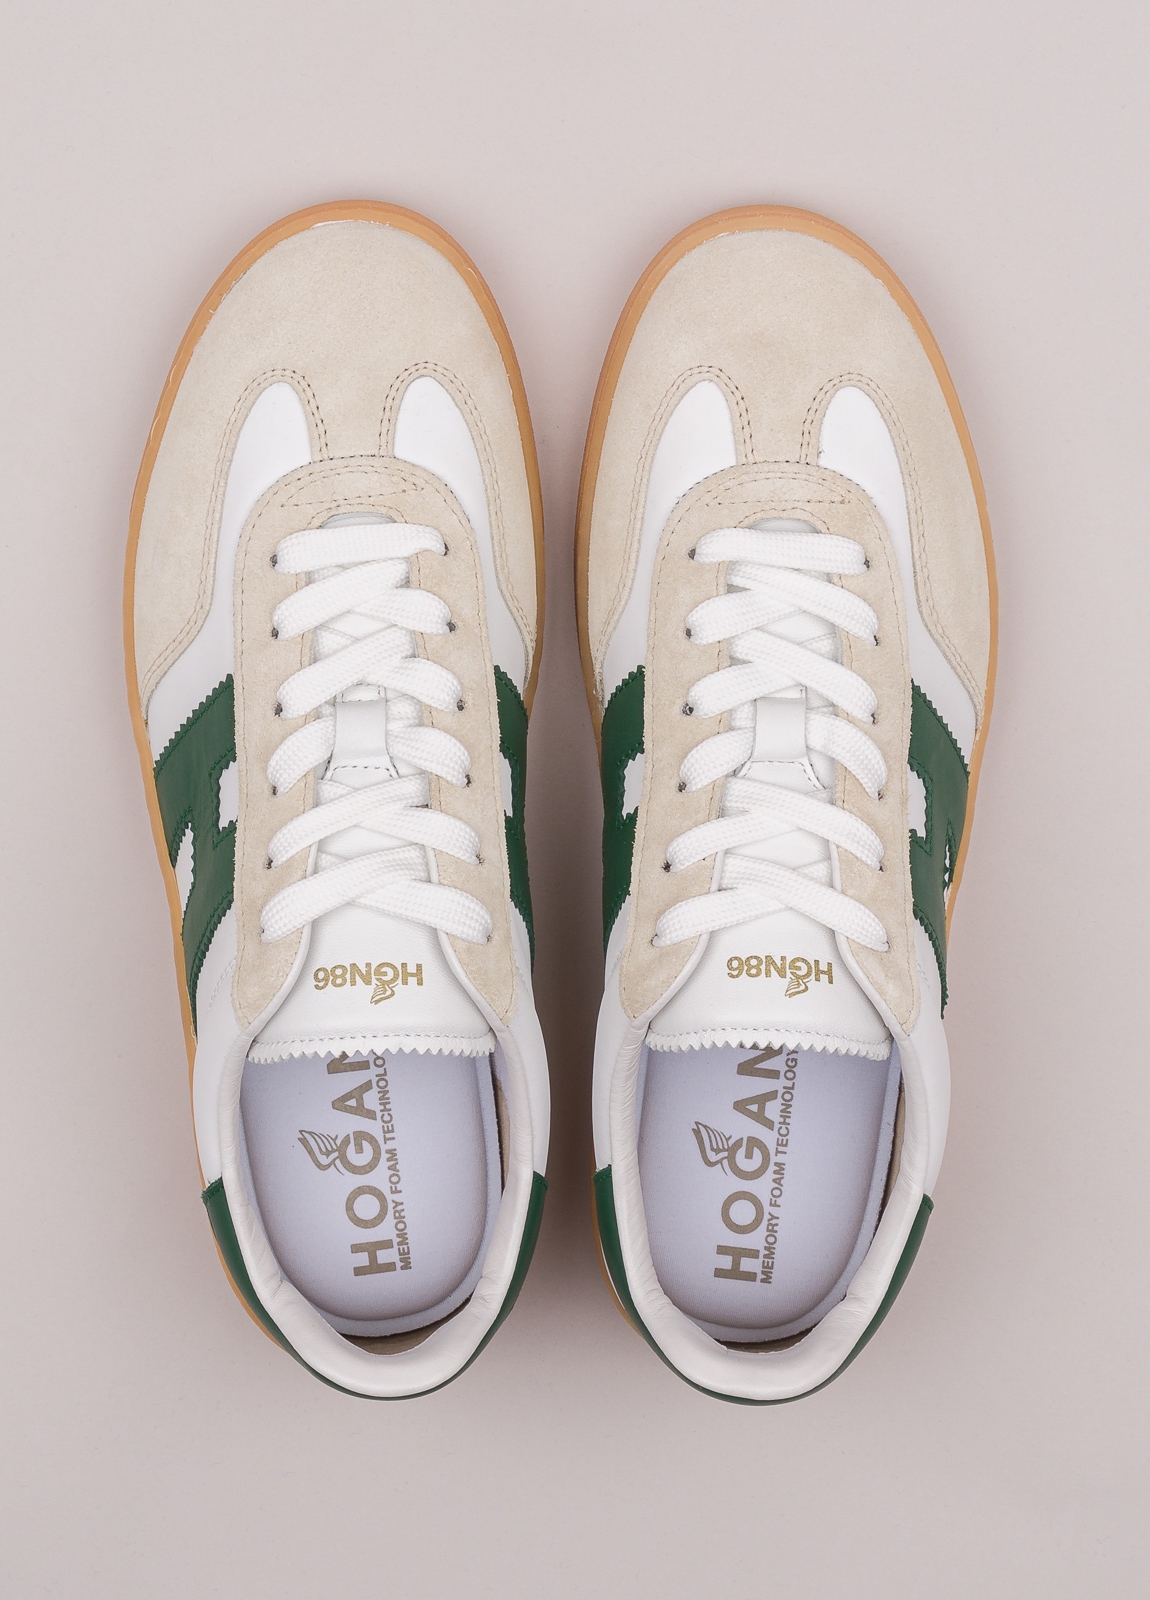 Zapatillas deportivas HOGAN color blanco, beige y verde - Ítem1